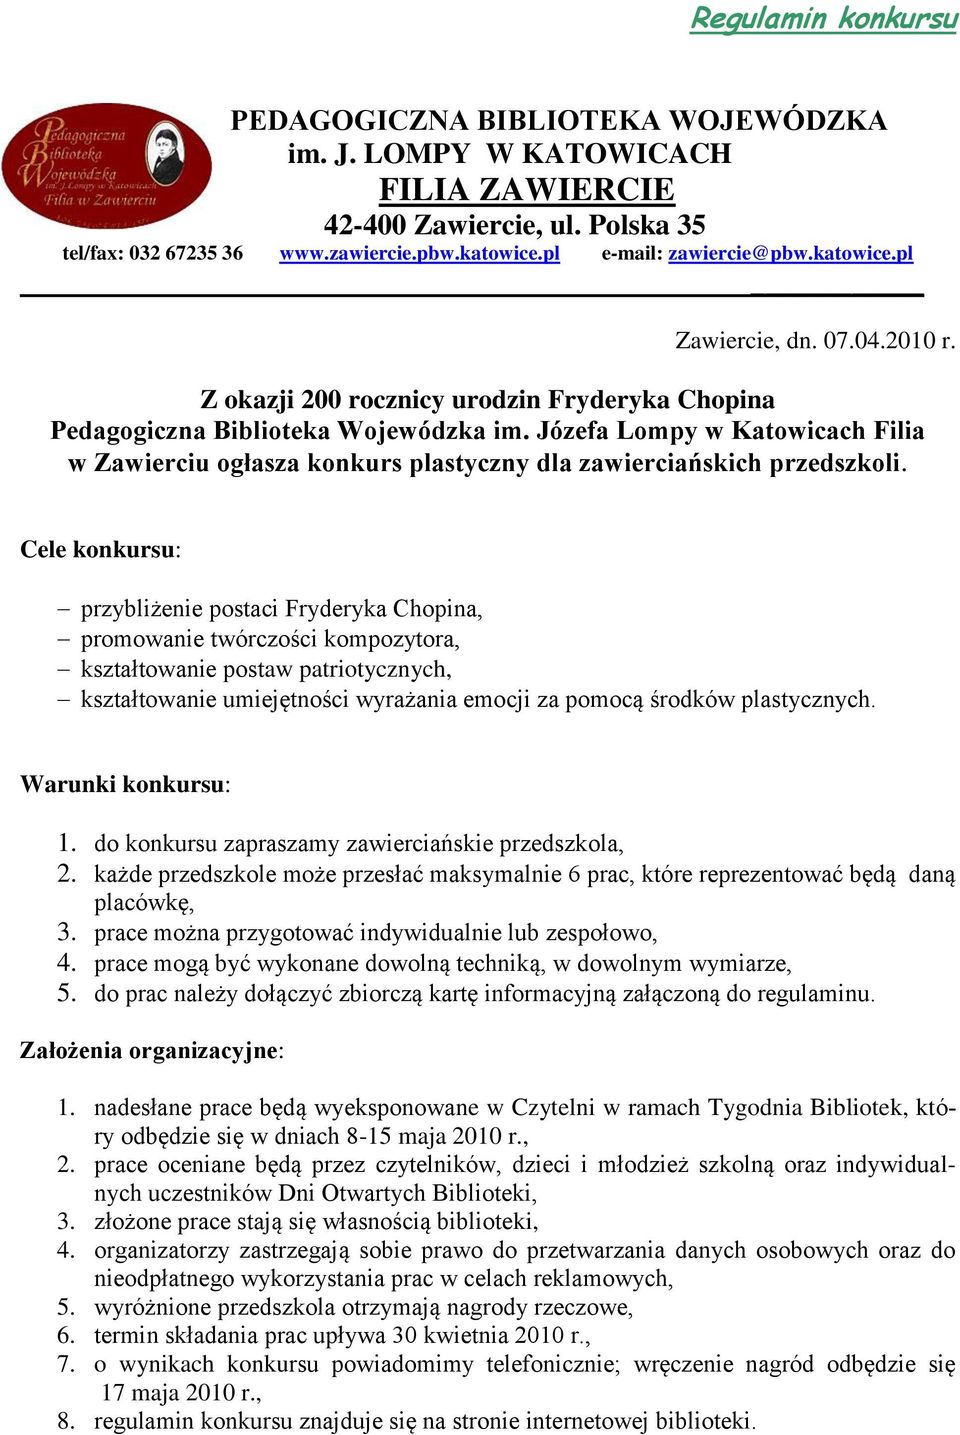 Józefa Lompy w Katowicach Filia w Zawierciu ogłasza konkurs plastyczny dla zawierciańskich przedszkoli.